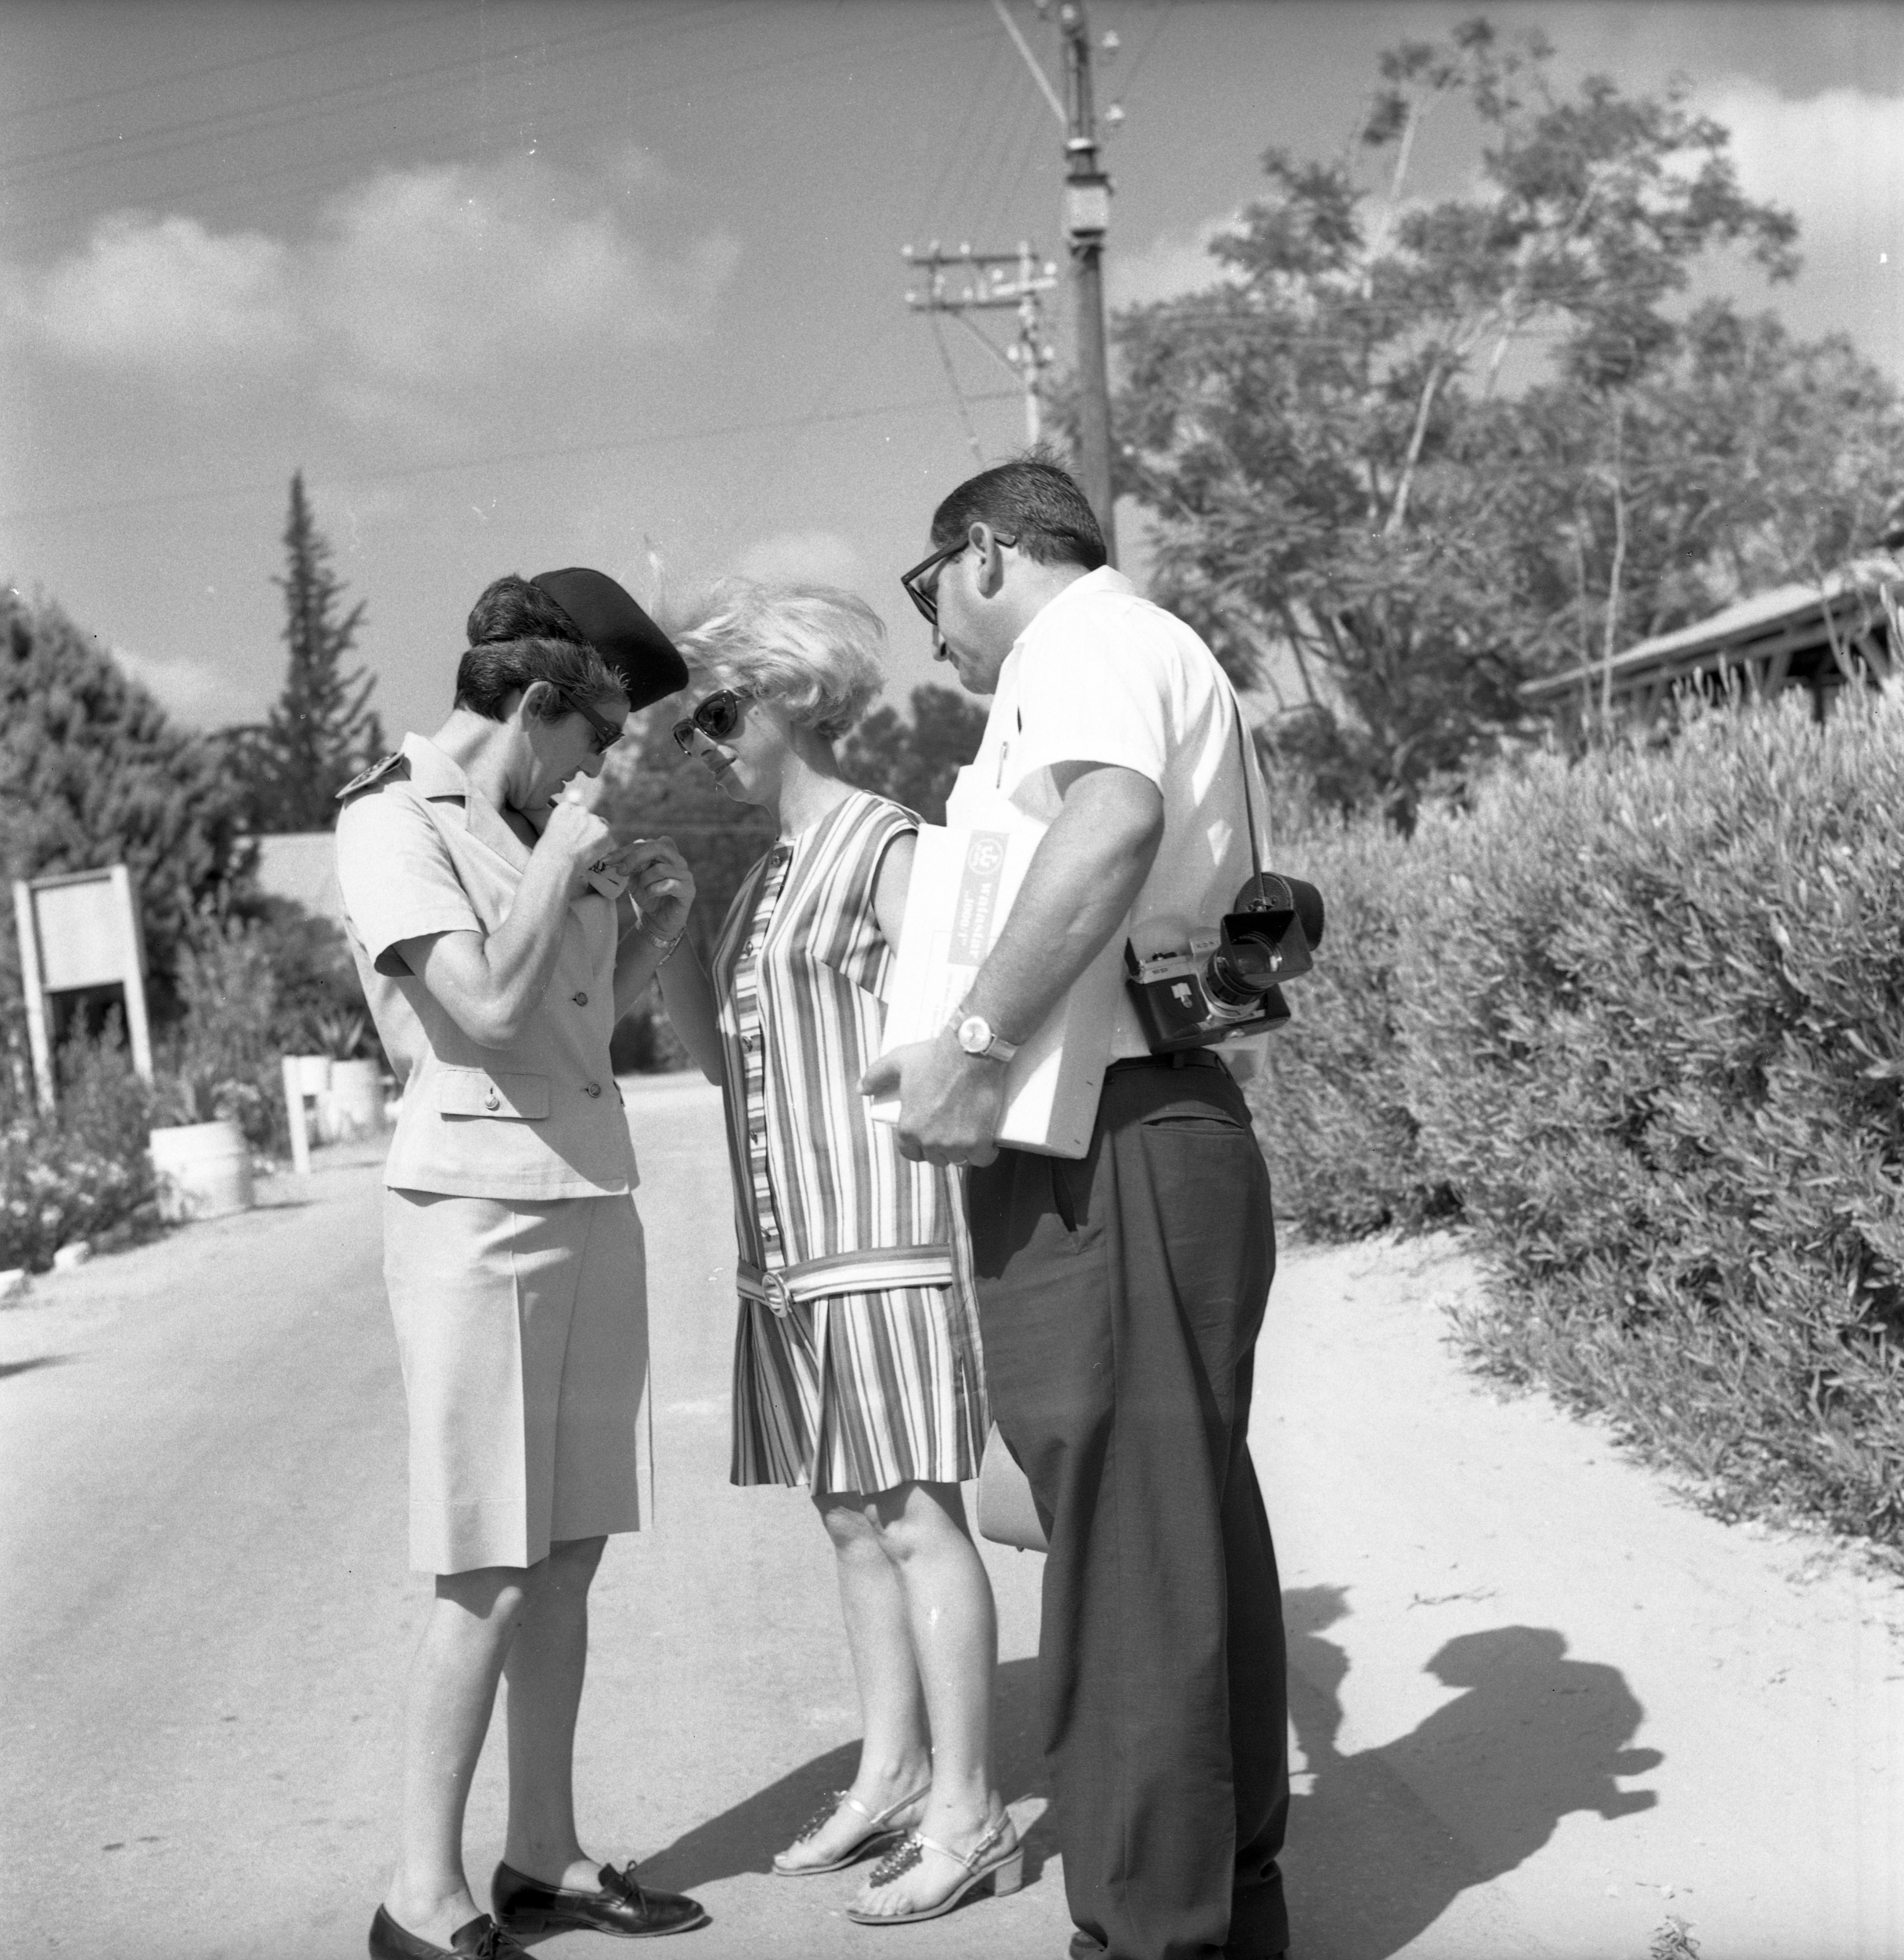  ח"ן, סיום טירונות, אל"מ סטלה לוי עם הורים; 1968